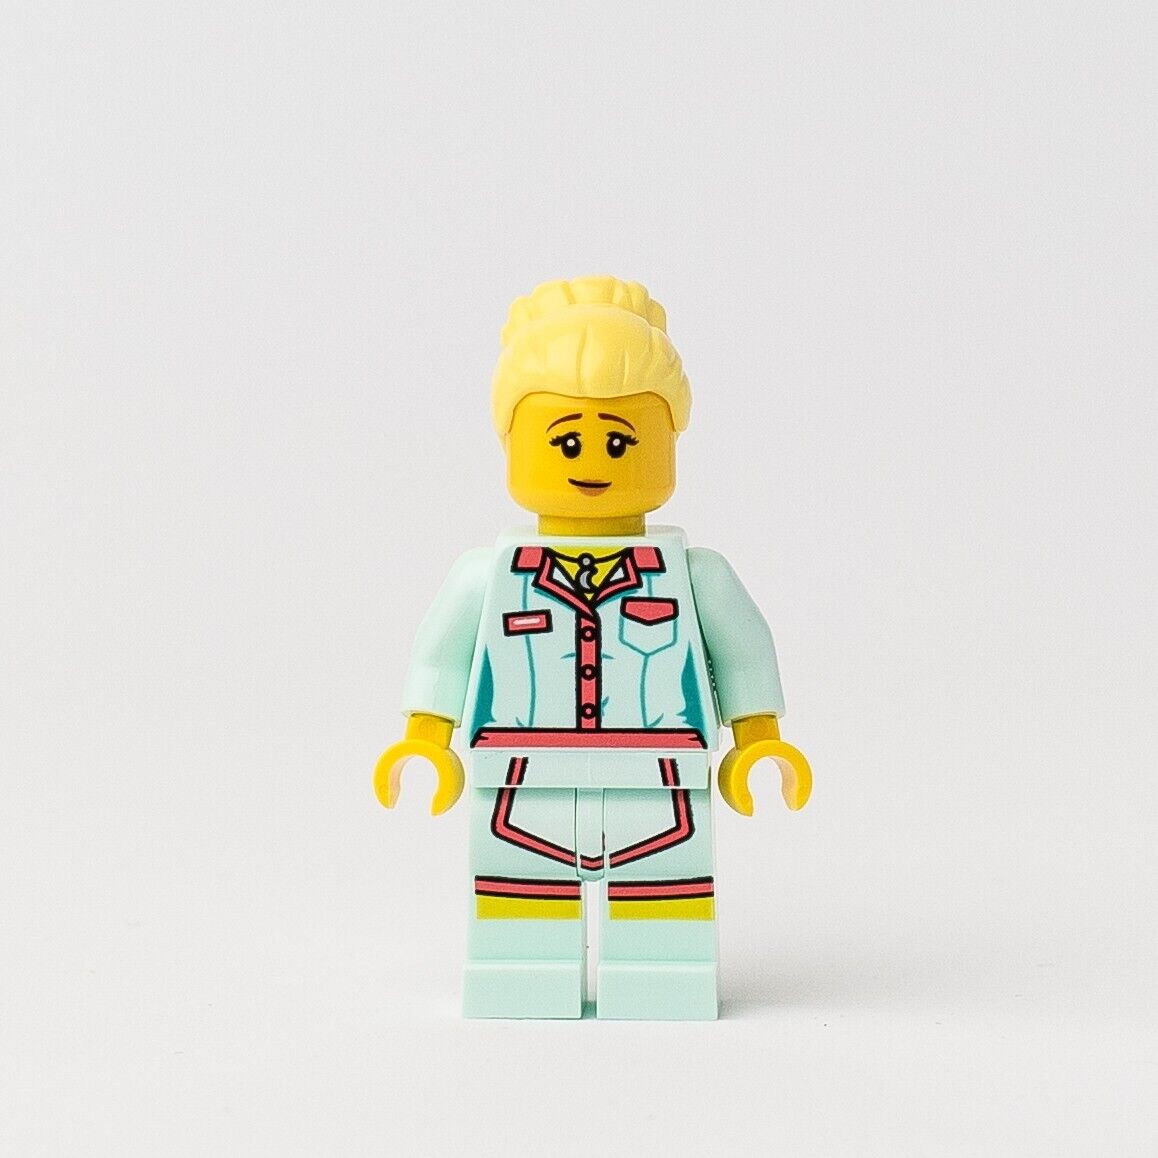 New LEGO Sally Waitress Minifigure - Hidden Side - 70422 (hs029) Diner